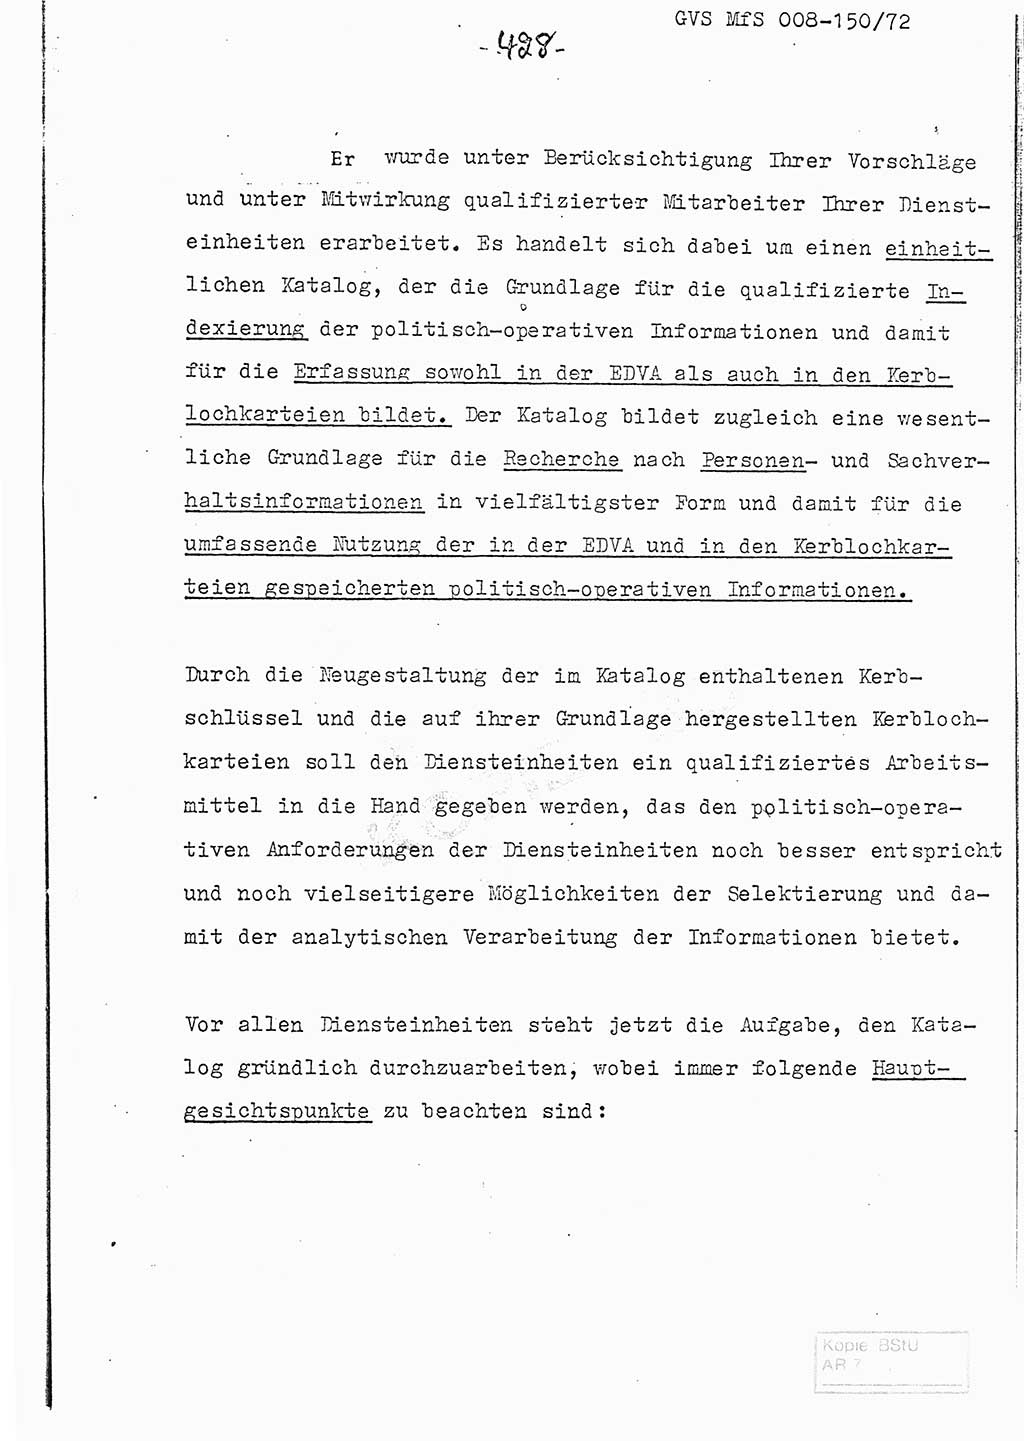 Referat (Entwurf) des Genossen Minister (Generaloberst Erich Mielke) auf der Dienstkonferenz 1972, Ministerium für Staatssicherheit (MfS) [Deutsche Demokratische Republik (DDR)], Der Minister, Geheime Verschlußsache (GVS) 008-150/72, Berlin 25.2.1972, Seite 428 (Ref. Entw. DK MfS DDR Min. GVS 008-150/72 1972, S. 428)